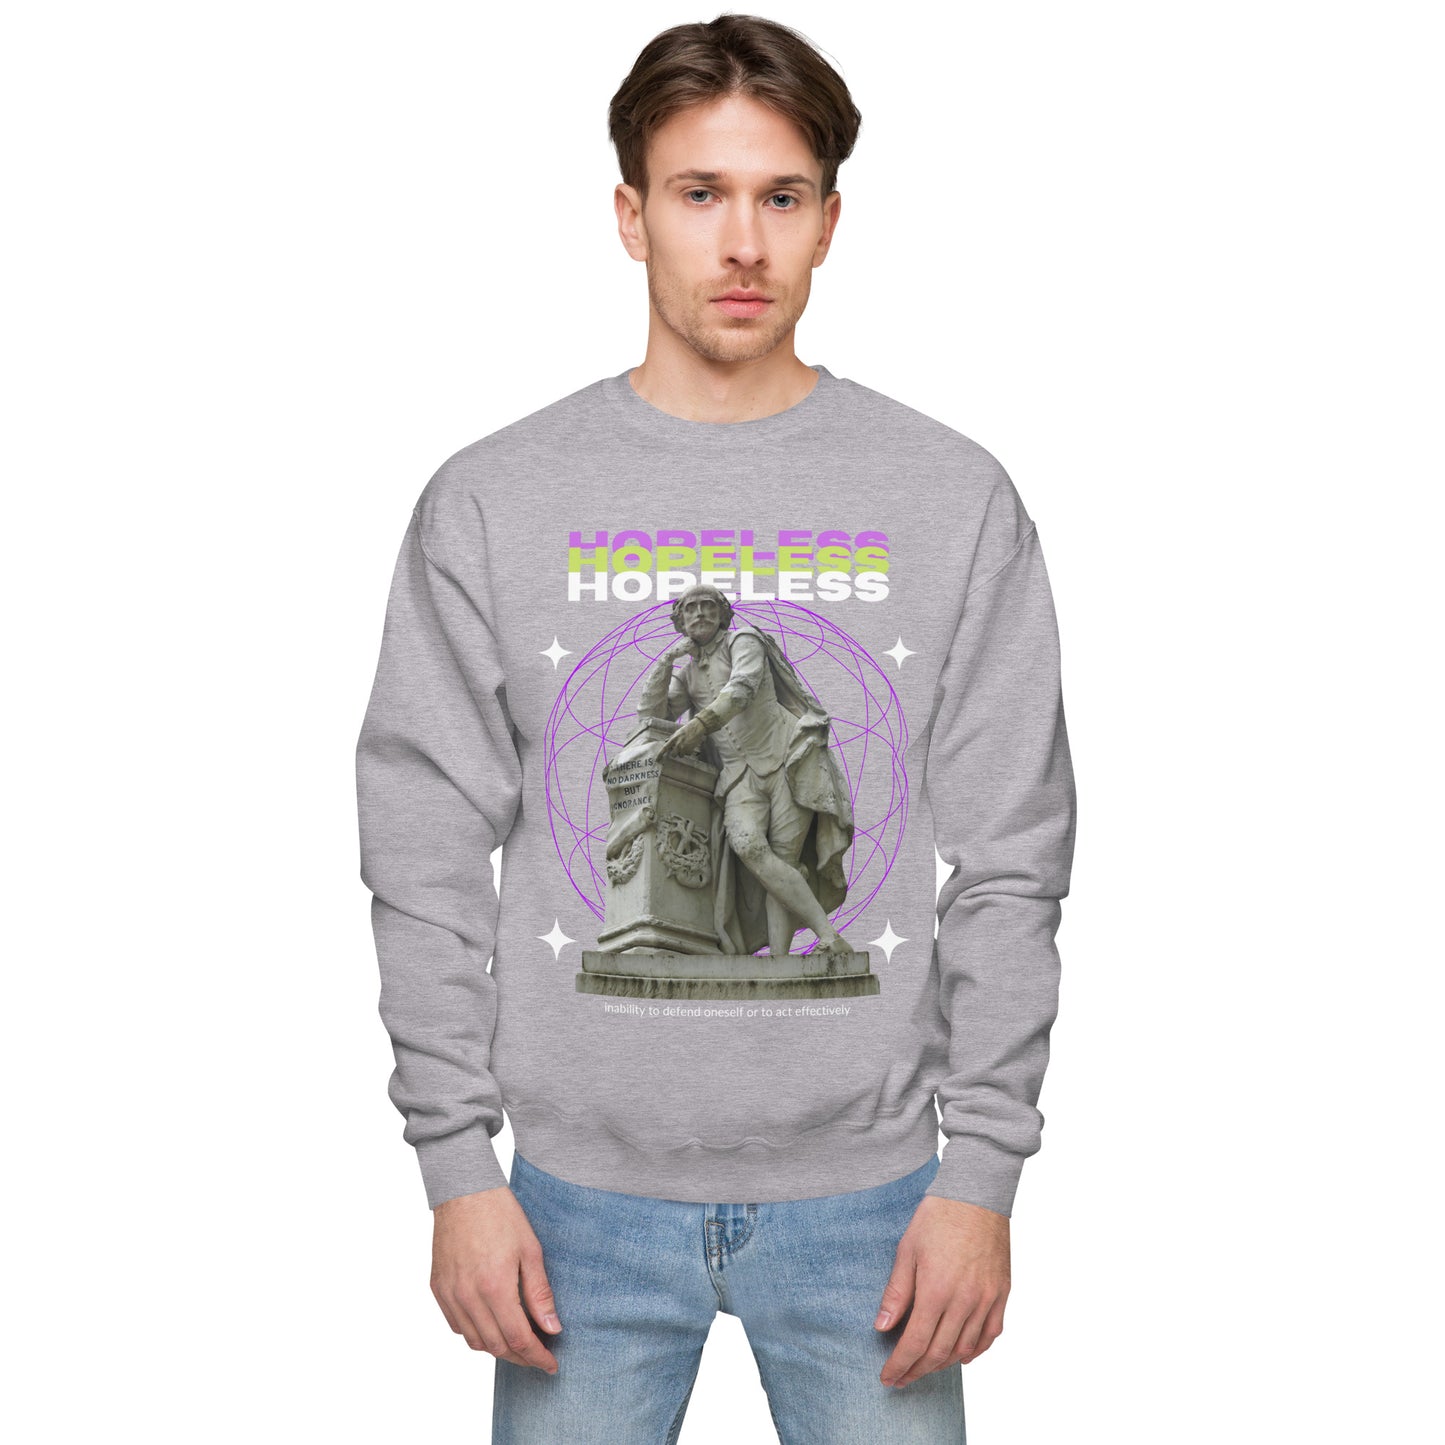 Hopeless fleece sweatshirt